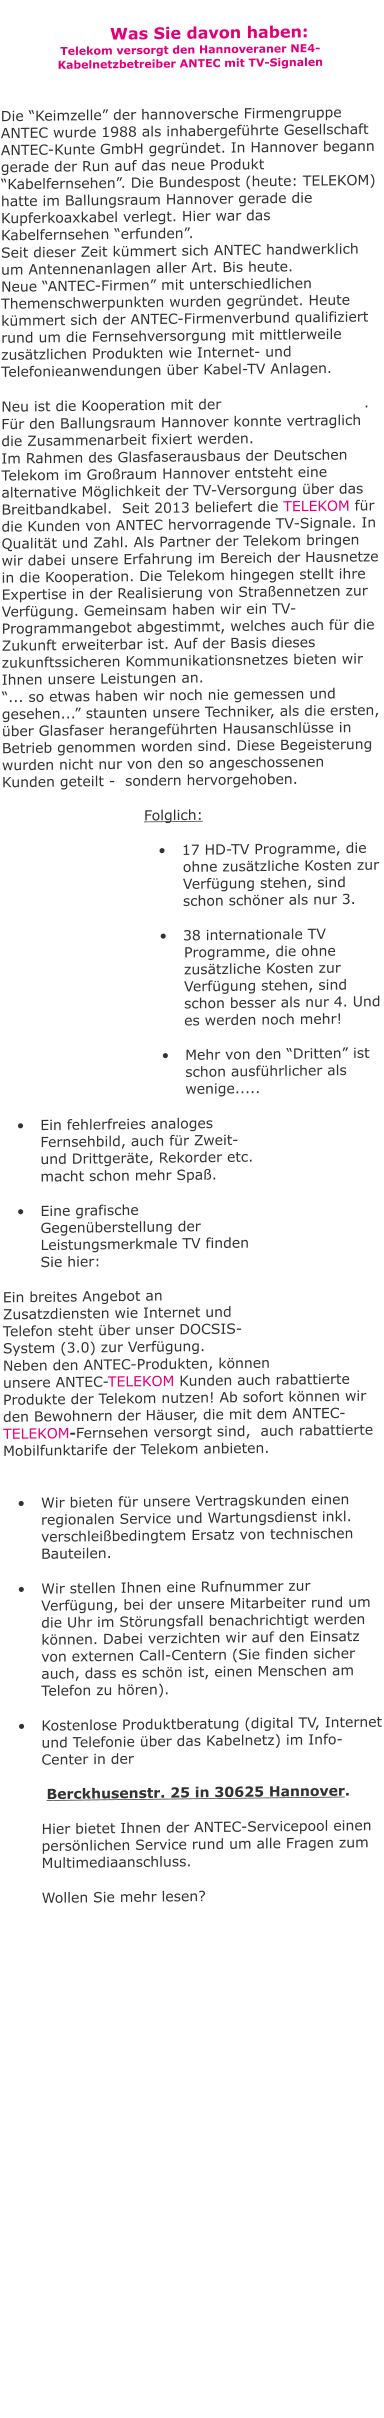 Was Sie davon haben: Telekom versorgt den Hannoveraner NE4- Kabelnetzbetreiber ANTEC mit TV-Signalen   Die “Keimzelle” der hannoversche Firmengruppe  ANTEC wurde 1988 als inhabergeführte Gesellschaft ANTEC-Kunte GmbH gegründet. In Hannover begann gerade der Run auf das neue Produkt “Kabelfernsehen”. Die Bundespost (heute: TELEKOM) hatte im Ballungsraum Hannover gerade die Kupferkoaxkabel verlegt. Hier war das Kabelfernsehen “erfunden”.  Seit dieser Zeit kümmert sich ANTEC handwerklich um Antennenanlagen aller Art. Bis heute. Neue “ANTEC-Firmen” mit unterschiedlichen Themenschwerpunkten wurden gegründet. Heute kümmert sich der ANTEC-Firmenverbund qualifiziert rund um die Fernsehversorgung mit mittlerweile zusätzlichen Produkten wie Internet- und Telefonieanwendungen über Kabel-TV Anlagen.  Neu ist die Kooperation mit der                             . Für den Ballungsraum Hannover konnte vertraglich die Zusammenarbeit fixiert werden.  Im Rahmen des Glasfaserausbaus der Deutschen Telekom im Großraum Hannover entsteht eine alternative Möglichkeit der TV-Versorgung über das Breitbandkabel.  Seit 2013 beliefert die TELEKOM für die Kunden von ANTEC hervorragende TV-Signale. In Qualität und Zahl. Als Partner der Telekom bringen wir dabei unsere Erfahrung im Bereich der Hausnetze in die Kooperation. Die Telekom hingegen stellt ihre Expertise in der Realisierung von Straßennetzen zur Verfügung. Gemeinsam haben wir ein TV-Programmangebot abgestimmt, welches auch für die Zukunft erweiterbar ist. Auf der Basis dieses zukunftssicheren Kommunikationsnetzes bieten wir Ihnen unsere Leistungen an. “... so etwas haben wir noch nie gemessen und gesehen...” staunten unsere Techniker, als die ersten, über Glasfaser herangeführten Hausanschlüsse in Betrieb genommen worden sind. Diese Begeisterung wurden nicht nur von den so angeschossenen Kunden geteilt -  sondern hervorgehoben.   Folglich:  •	17 HD-TV Programme, die ohne zusätzliche Kosten zur Verfügung stehen, sind schon schöner als nur 3. •	38 internationale TV Programme, die ohne zusätzliche Kosten zur Verfügung stehen, sind schon besser als nur 4. Und es werden noch mehr! •	Mehr von den “Dritten” ist schon ausführlicher als wenige..... •	Ein fehlerfreies analoges Fernsehbild, auch für Zweit- und Drittgeräte, Rekorder etc.  macht schon mehr Spaß.  •	Eine grafische Gegenüberstellung der Leistungsmerkmale TV finden Sie hier:  Ein breites Angebot an Zusatzdiensten wie Internet und Telefon steht über unser DOCSIS-System (3.0) zur Verfügung.  Neben den ANTEC-Produkten, können unsere ANTEC-TELEKOM Kunden auch rabattierte Produkte der Telekom nutzen! Ab sofort können wir den Bewohnern der Häuser, die mit dem ANTEC-TELEKOM-Fernsehen versorgt sind,  auch rabattierte Mobilfunktarife der Telekom anbieten.   •	Wir bieten für unsere Vertragskunden einen regionalen Service und Wartungsdienst inkl. verschleißbedingtem Ersatz von technischen Bauteilen.   •	Wir stellen Ihnen eine Rufnummer zur Verfügung, bei der unsere Mitarbeiter rund um die Uhr im Störungsfall benachrichtigt werden können. Dabei verzichten wir auf den Einsatz von externen Call-Centern (Sie finden sicher auch, dass es schön ist, einen Menschen am Telefon zu hören).  •	Kostenlose Produktberatung (digital TV, Internet und Telefonie über das Kabelnetz) im Info-Center in der    Berckhusenstr. 25 in 30625 Hannover.   Hier bietet Ihnen der ANTEC-Servicepool einen persönlichen Service rund um alle Fragen zum Multimediaanschluss.  Wollen Sie mehr lesen?